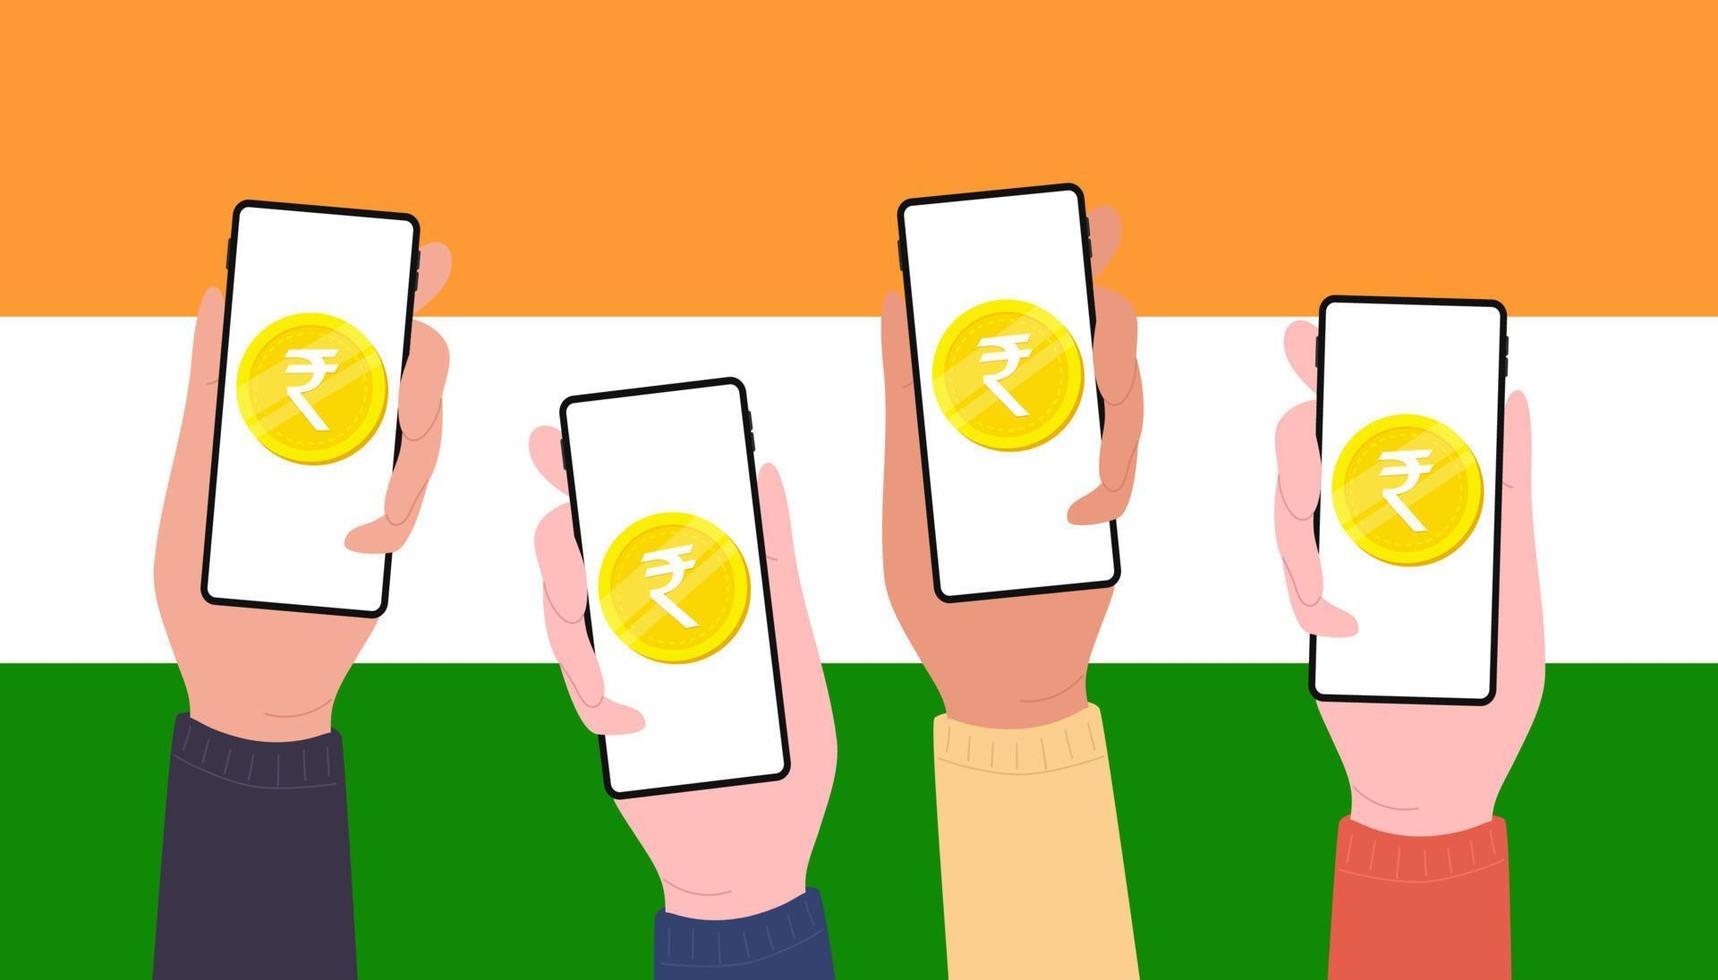 digital rupee mynt på mobil skärm av människor, cbdc valuta trogen digital pengar på Indien flagga bakgrund. vektor